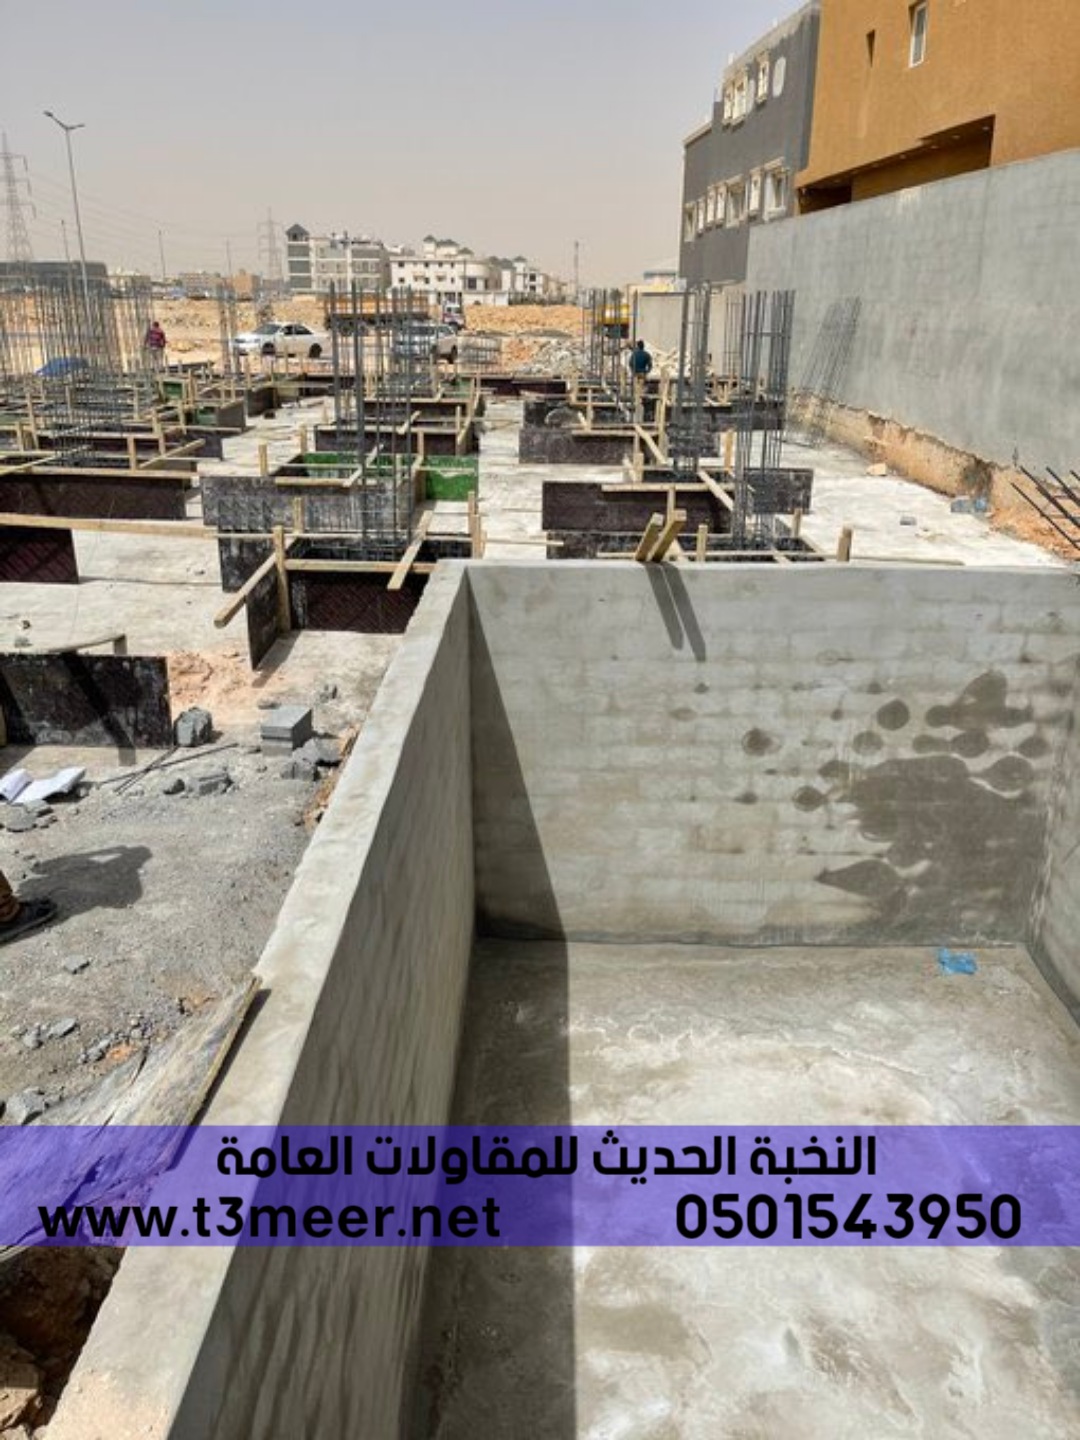 تشطيب منازل و بناء عظم في الرياض , 0501543950 P_2431r69p08